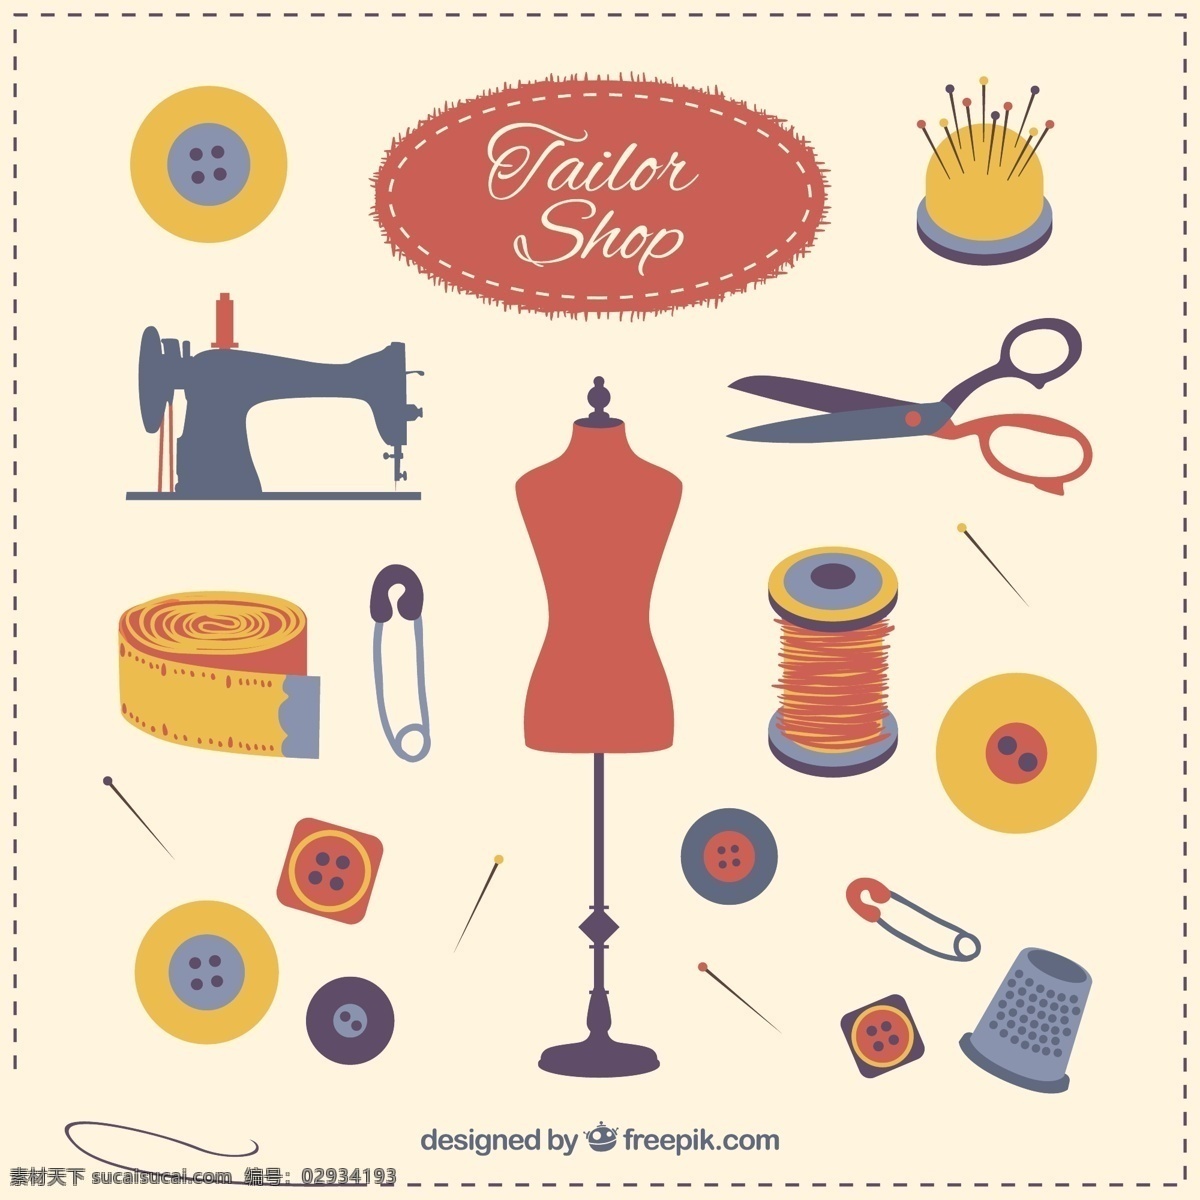 裁缝店元素 剪刀 按钮 缝纫 裁缝 机械 时装 工艺品 饰品